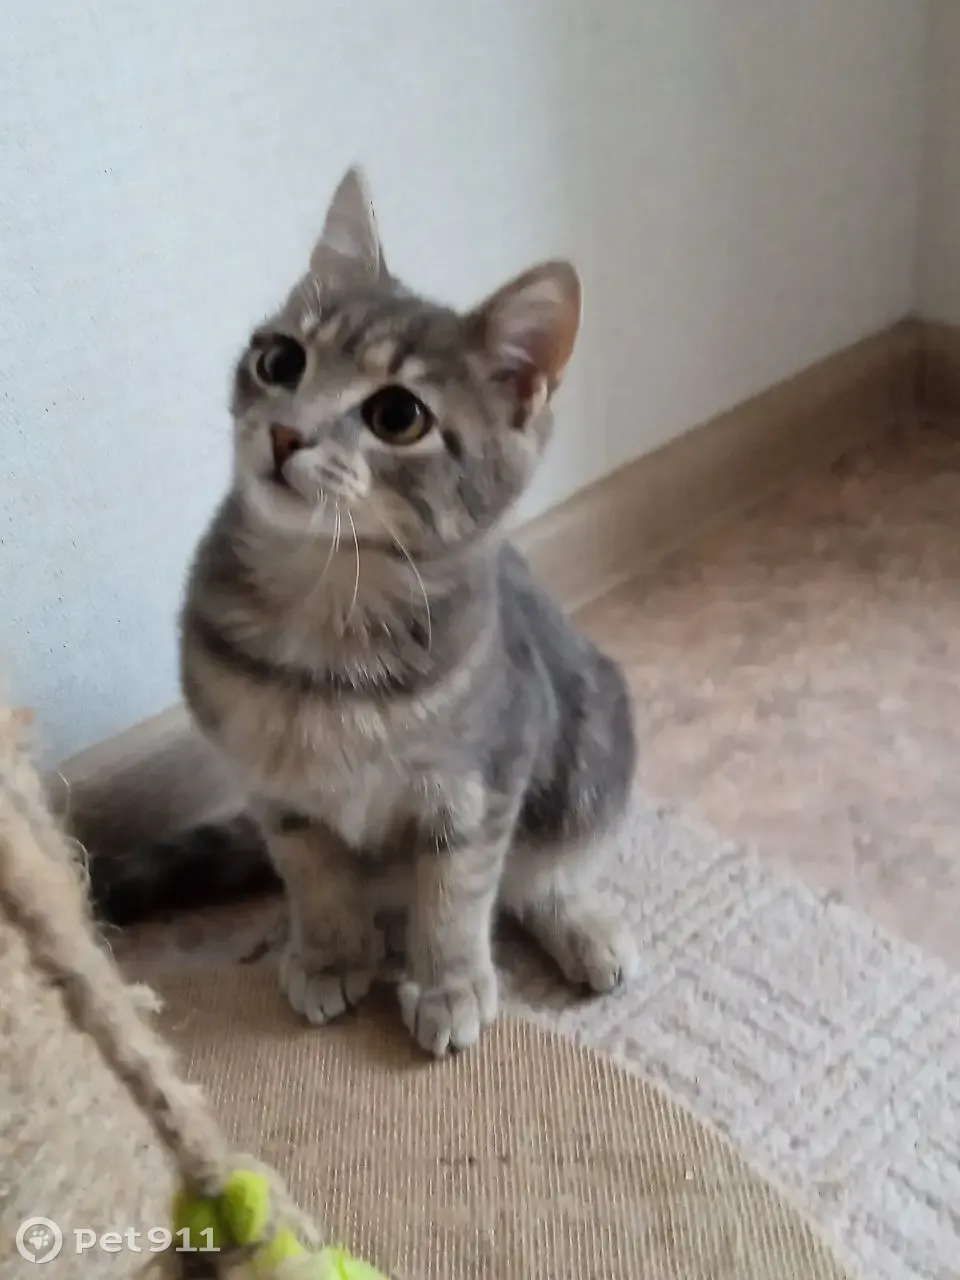 Найден трехмесячный котенок на ул. Ленской, Томск | Pet911.ru